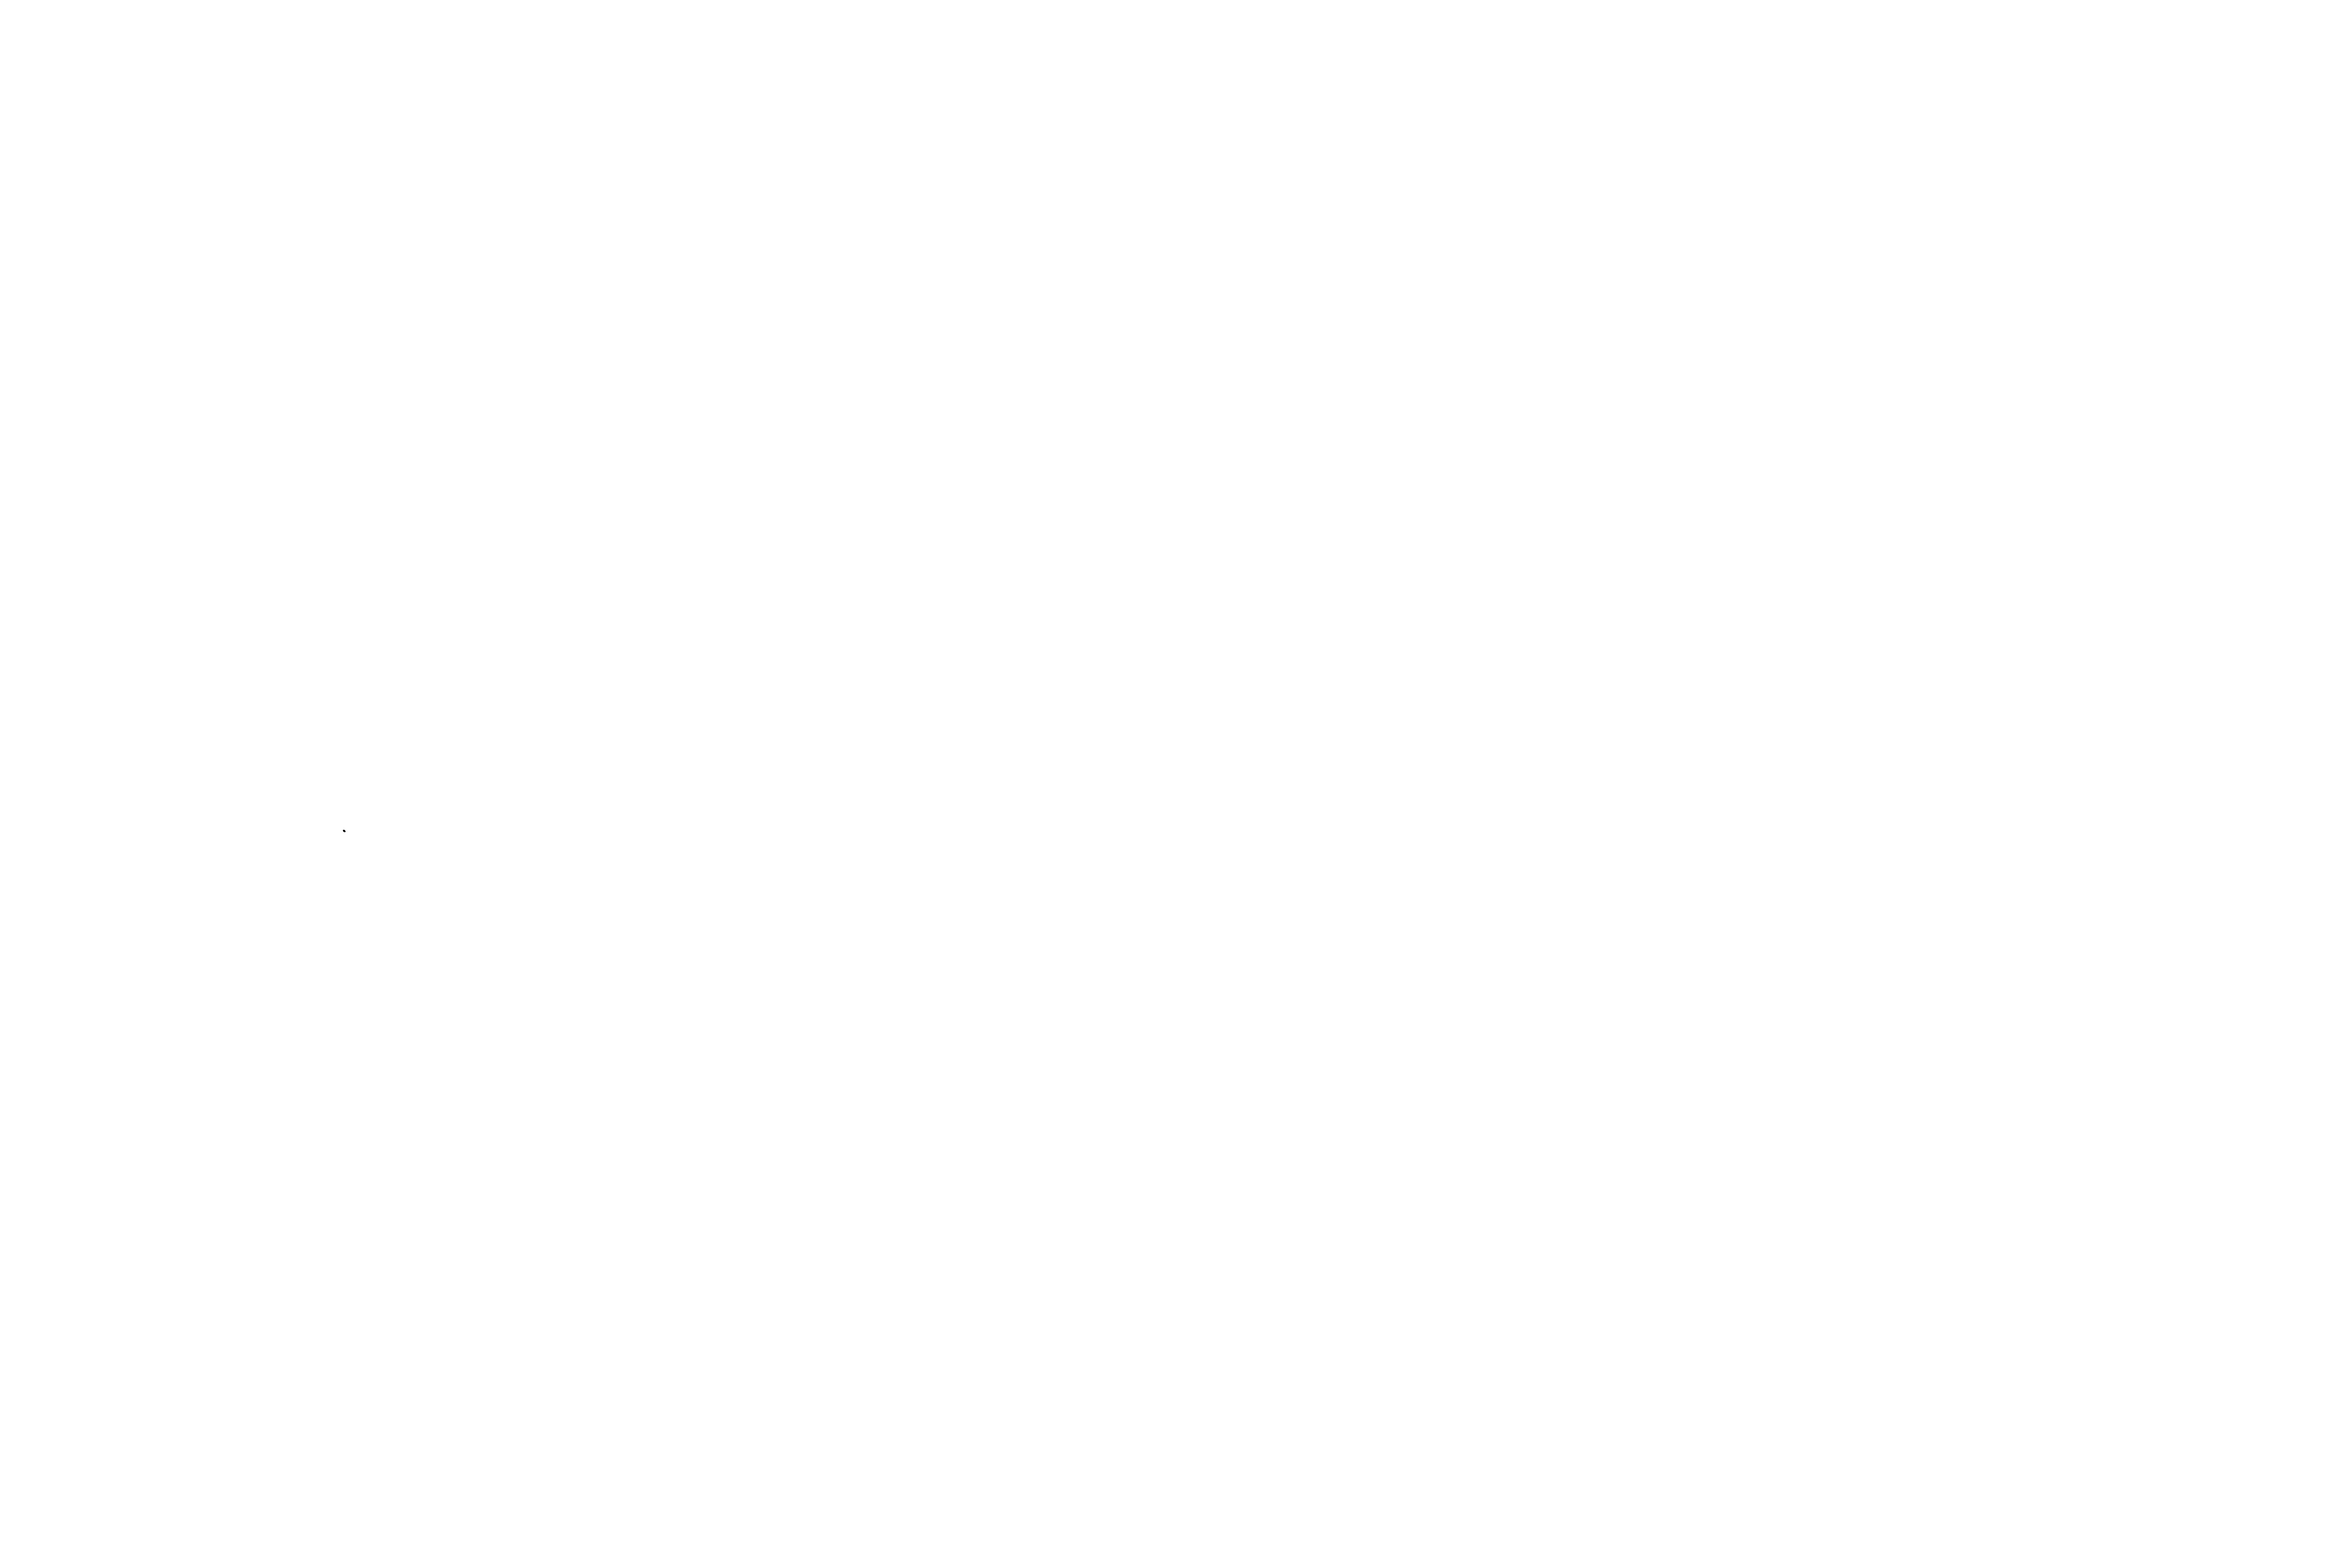 Fei Wyatt